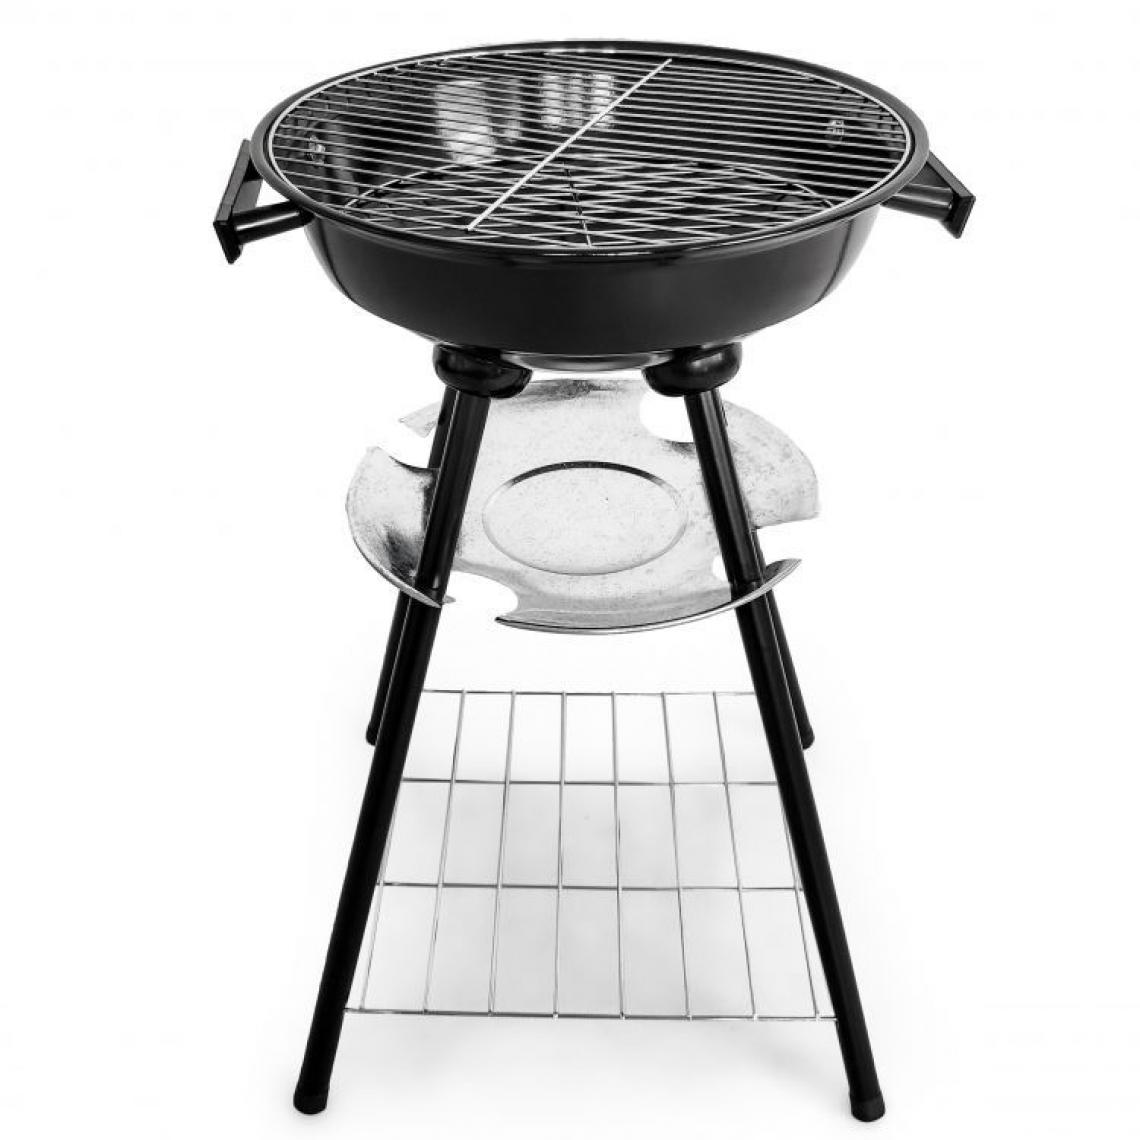 Hucoco - MSTORE | Barbecue de jardin rond | Dimensions : 59x37x34 cm | Grille chromée | Couvercle rond ventilation + cendrier - Noir - Barbecues charbon de bois